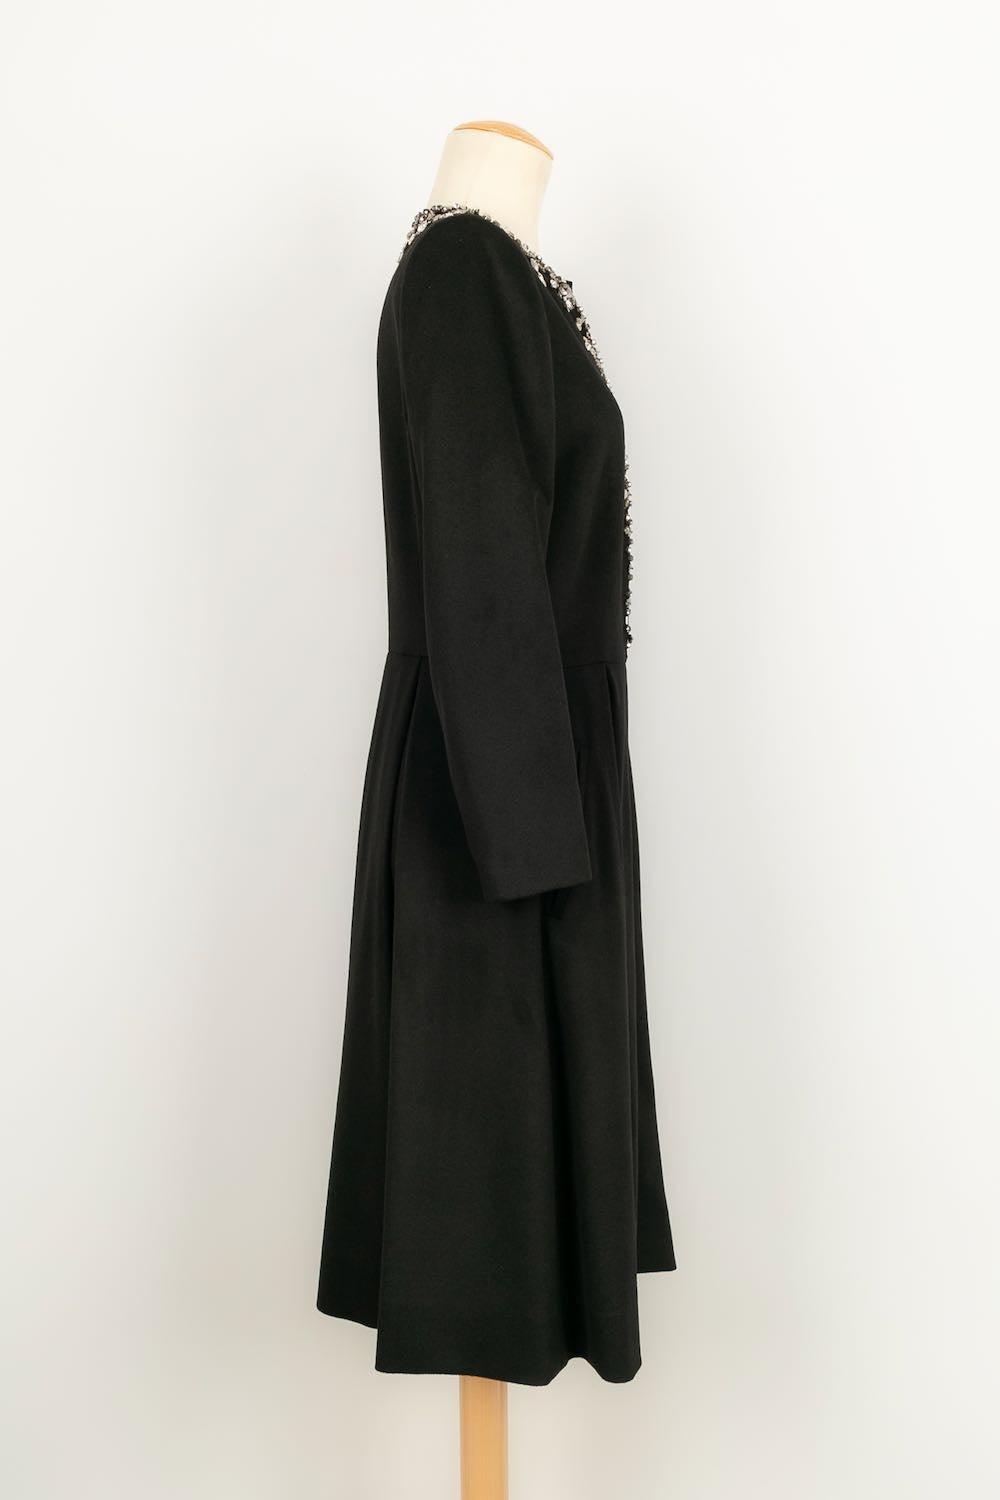 Azzaro - (Fabriqué en France) Manteau / veste longue en cachemire noir cousu de strass. Taille 40FR.

Informations complémentaires : 
Dimensions : Largeur des épaules : 37 cm, Longueur des manches : 54 cm, Longueur : 100 cm
Condit : Très bon